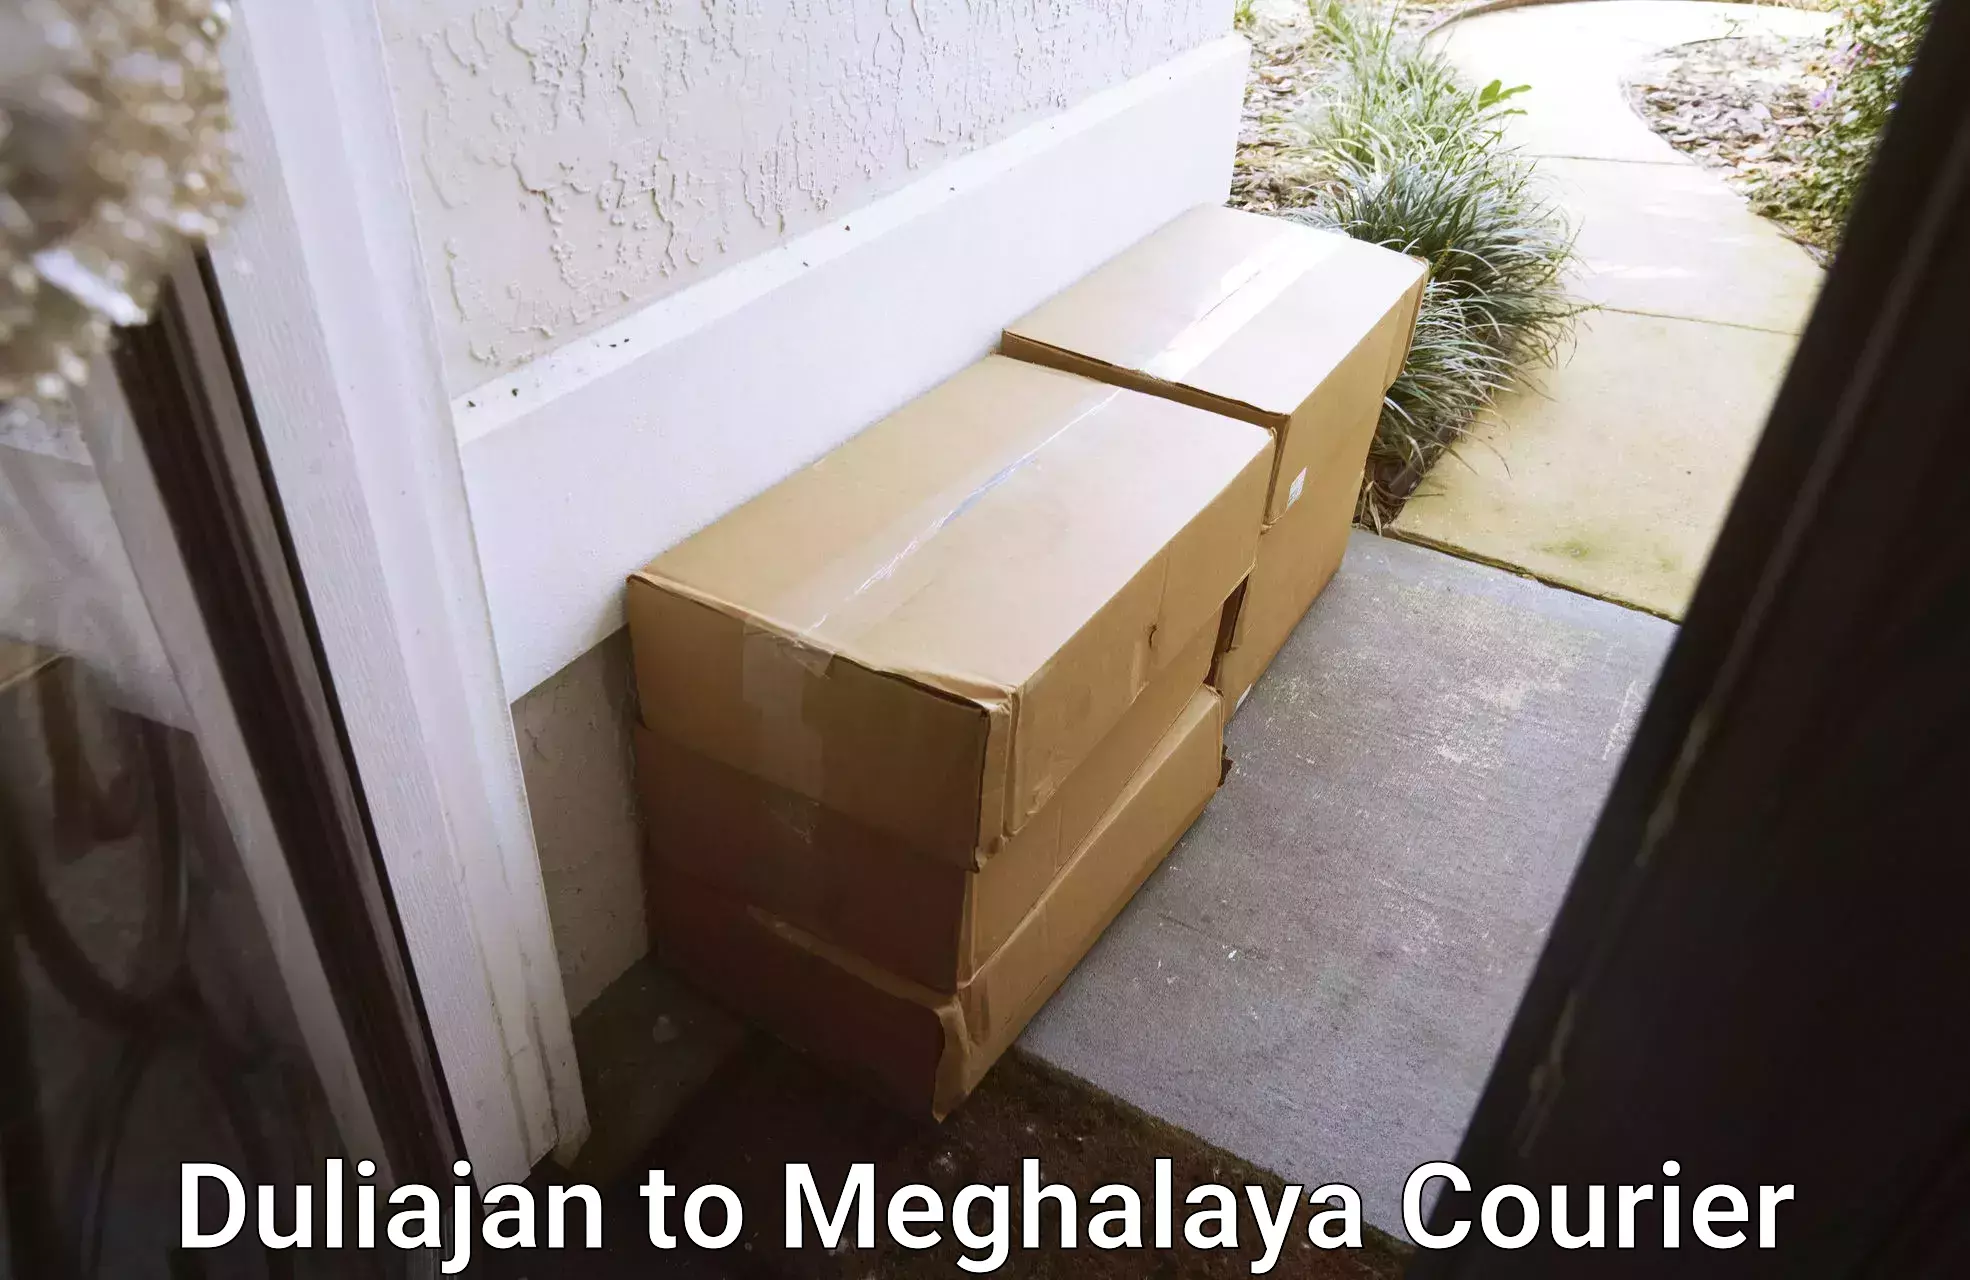 Individual parcel service Duliajan to NIT Meghalaya